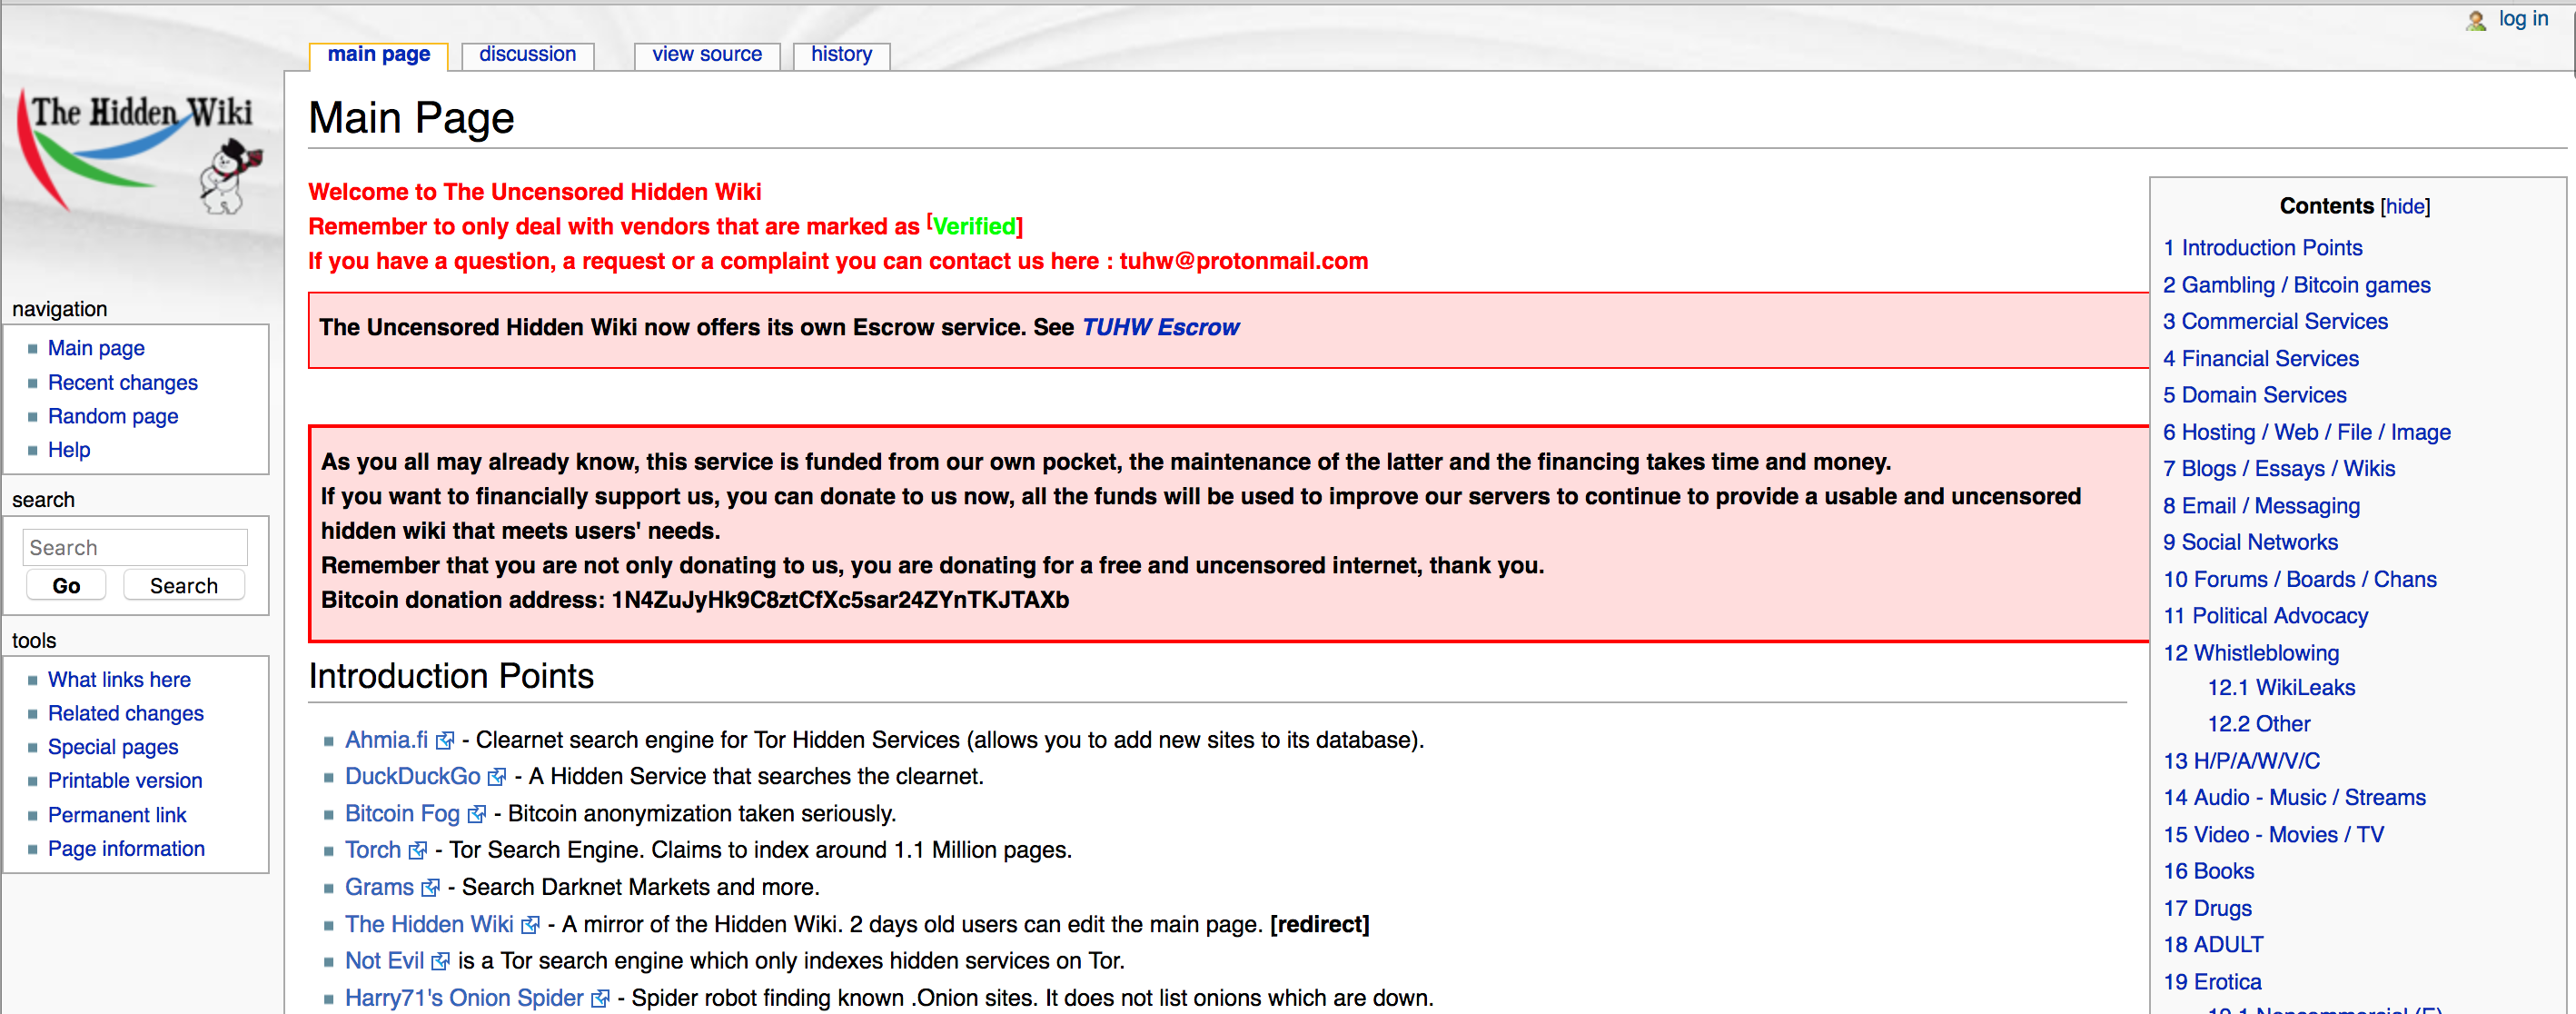 Вики darknet вход на мегу адреса магазинов в тор браузере даркнетruzxpnew4af